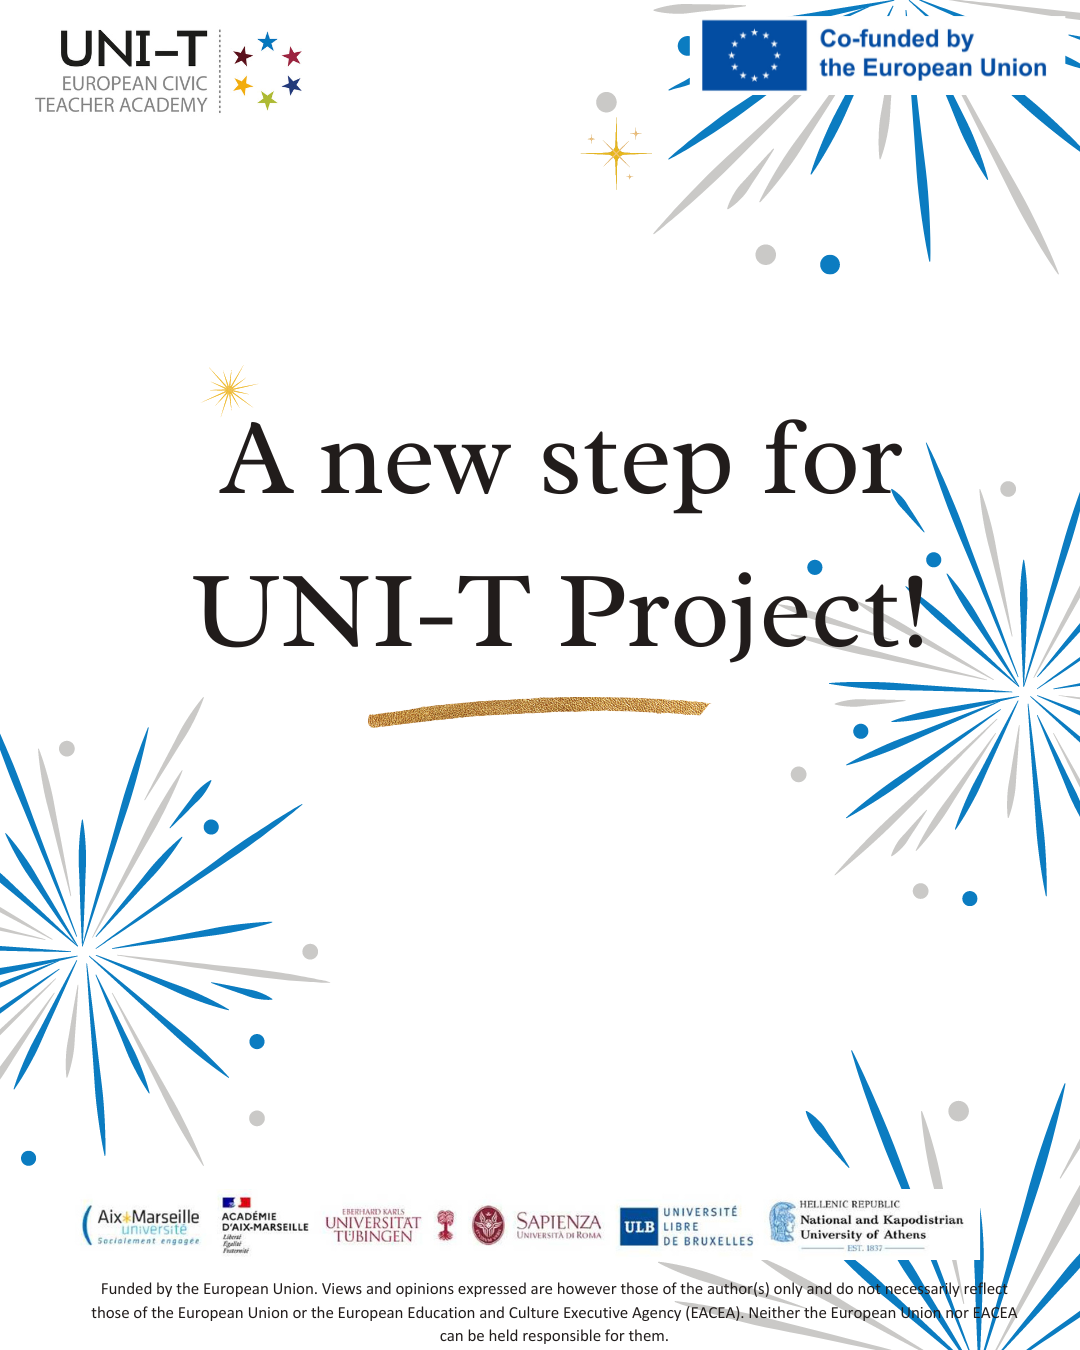 Une première campagne de mobilité étudiante réussie pour UNI-T Academy !